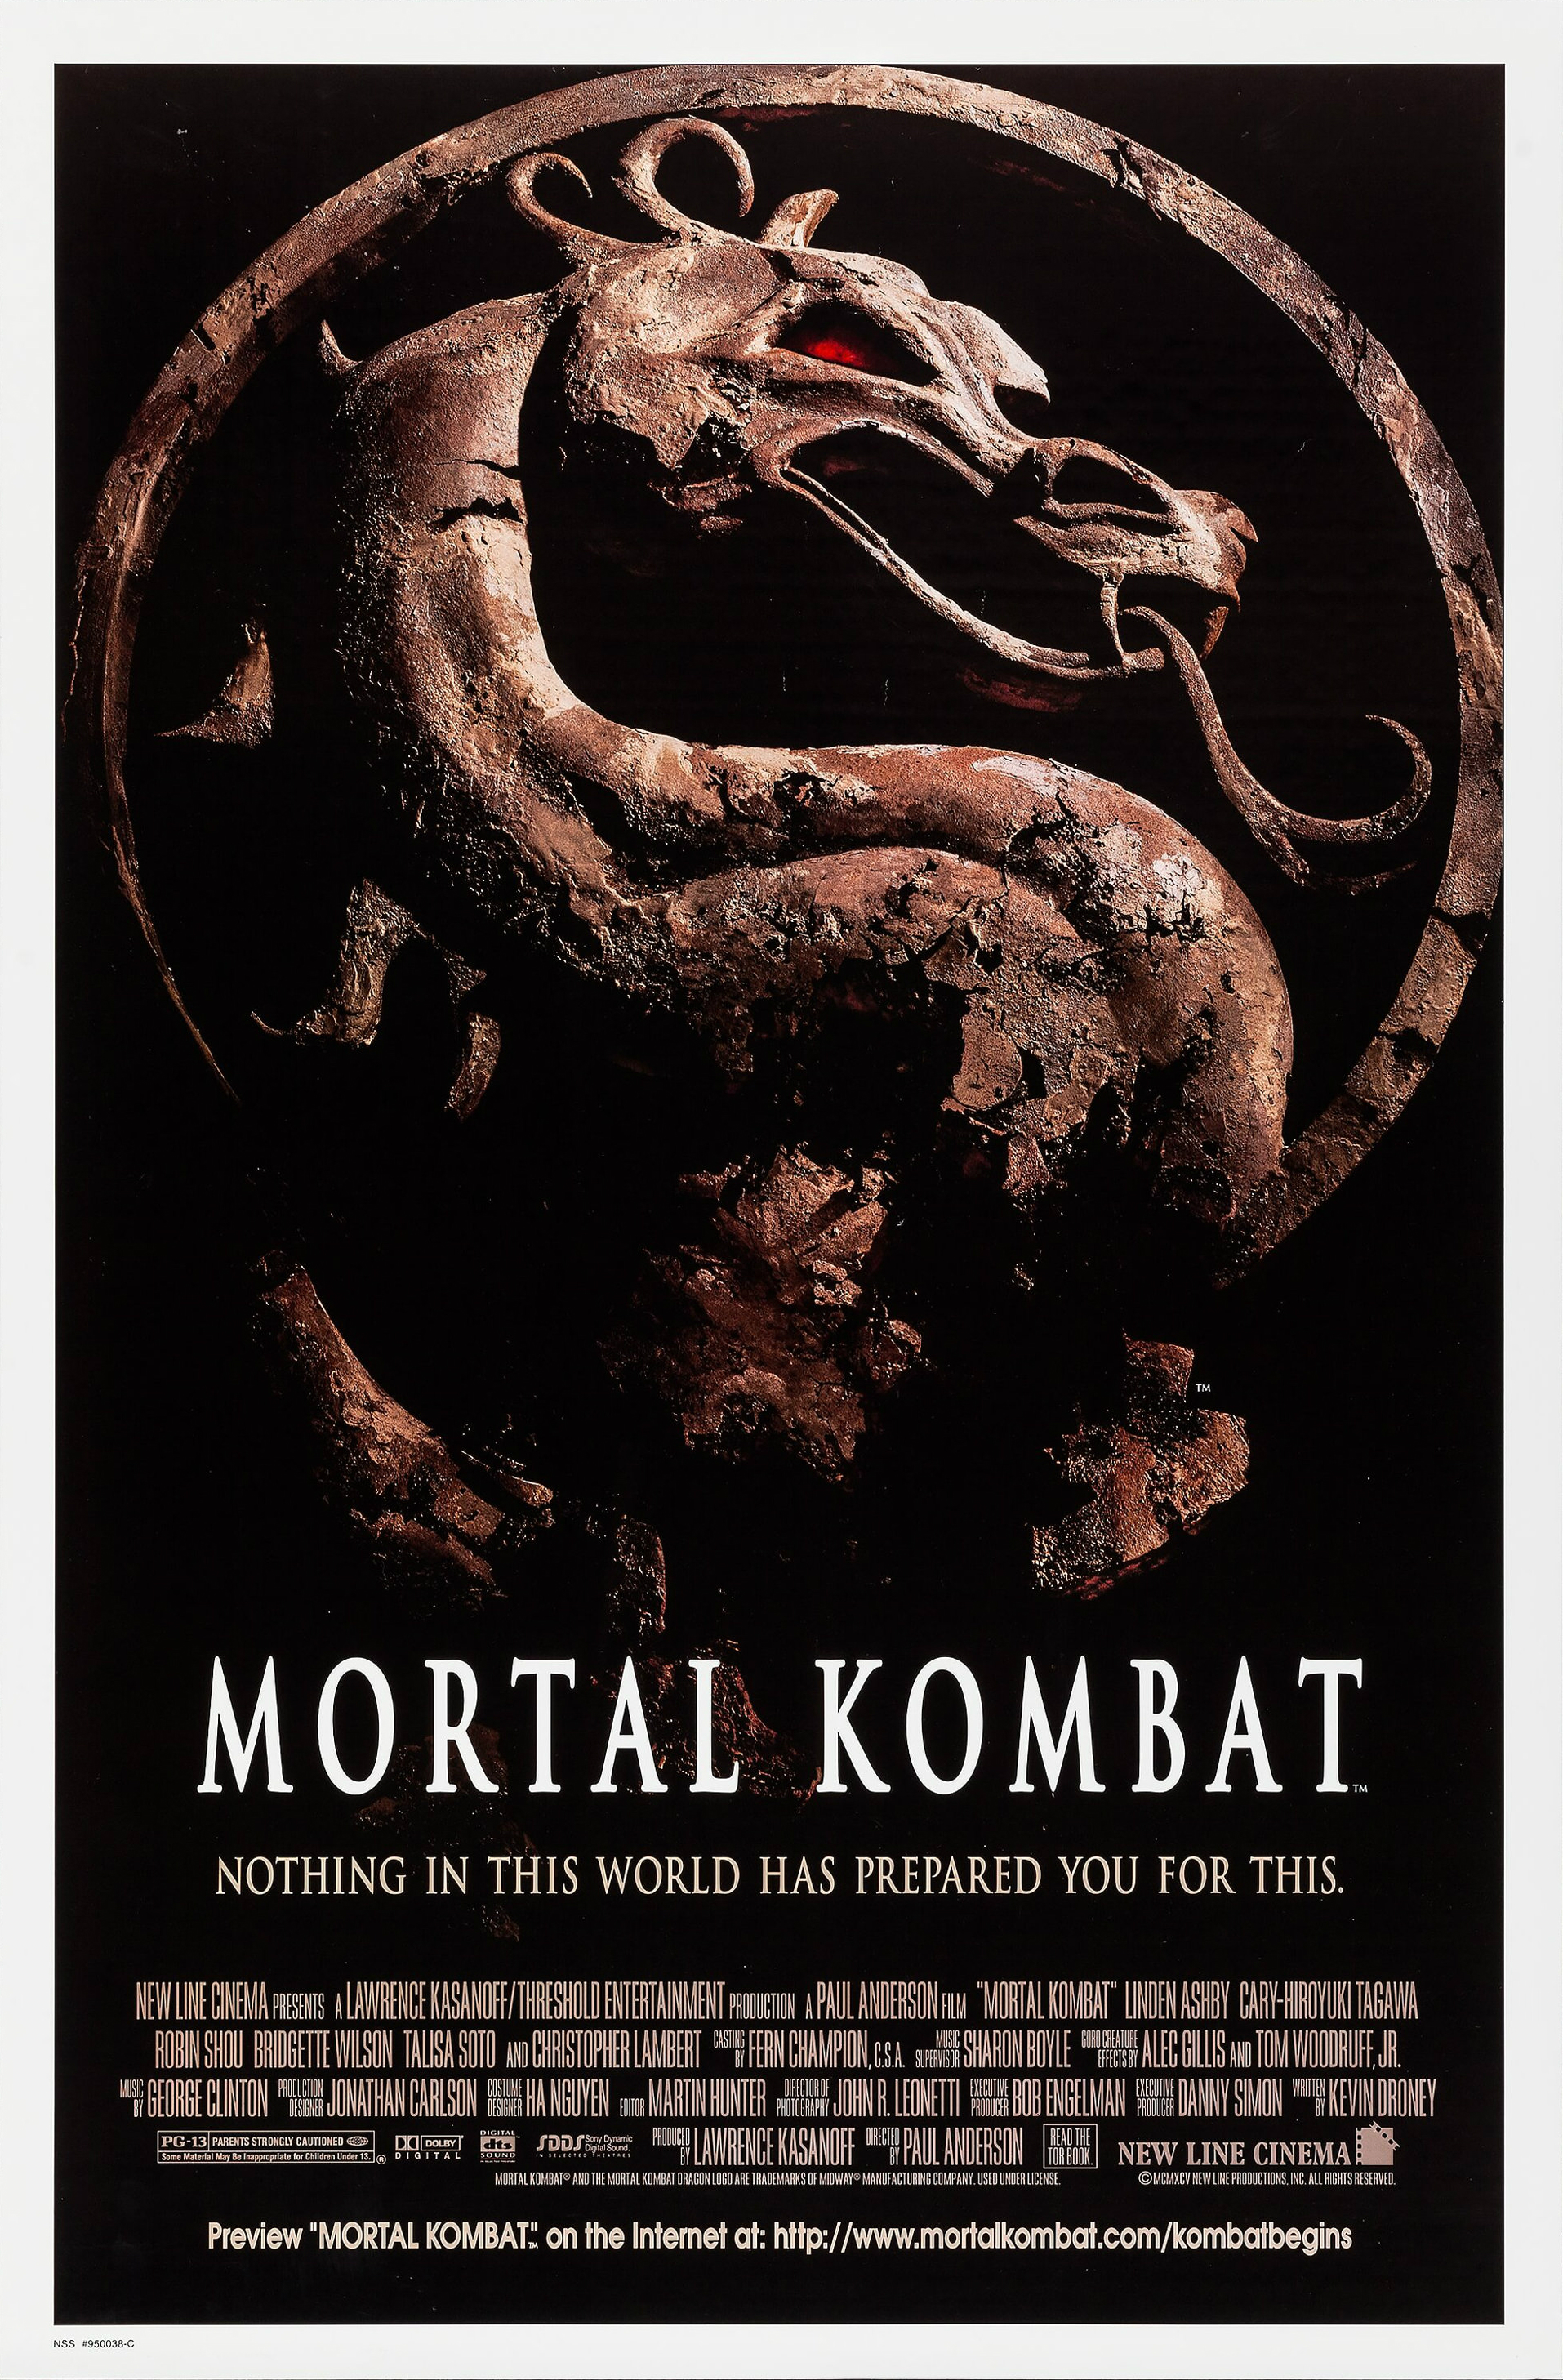 Mortal Kombat (film) | Mortal Kombat Wiki | FANDOM powered ...